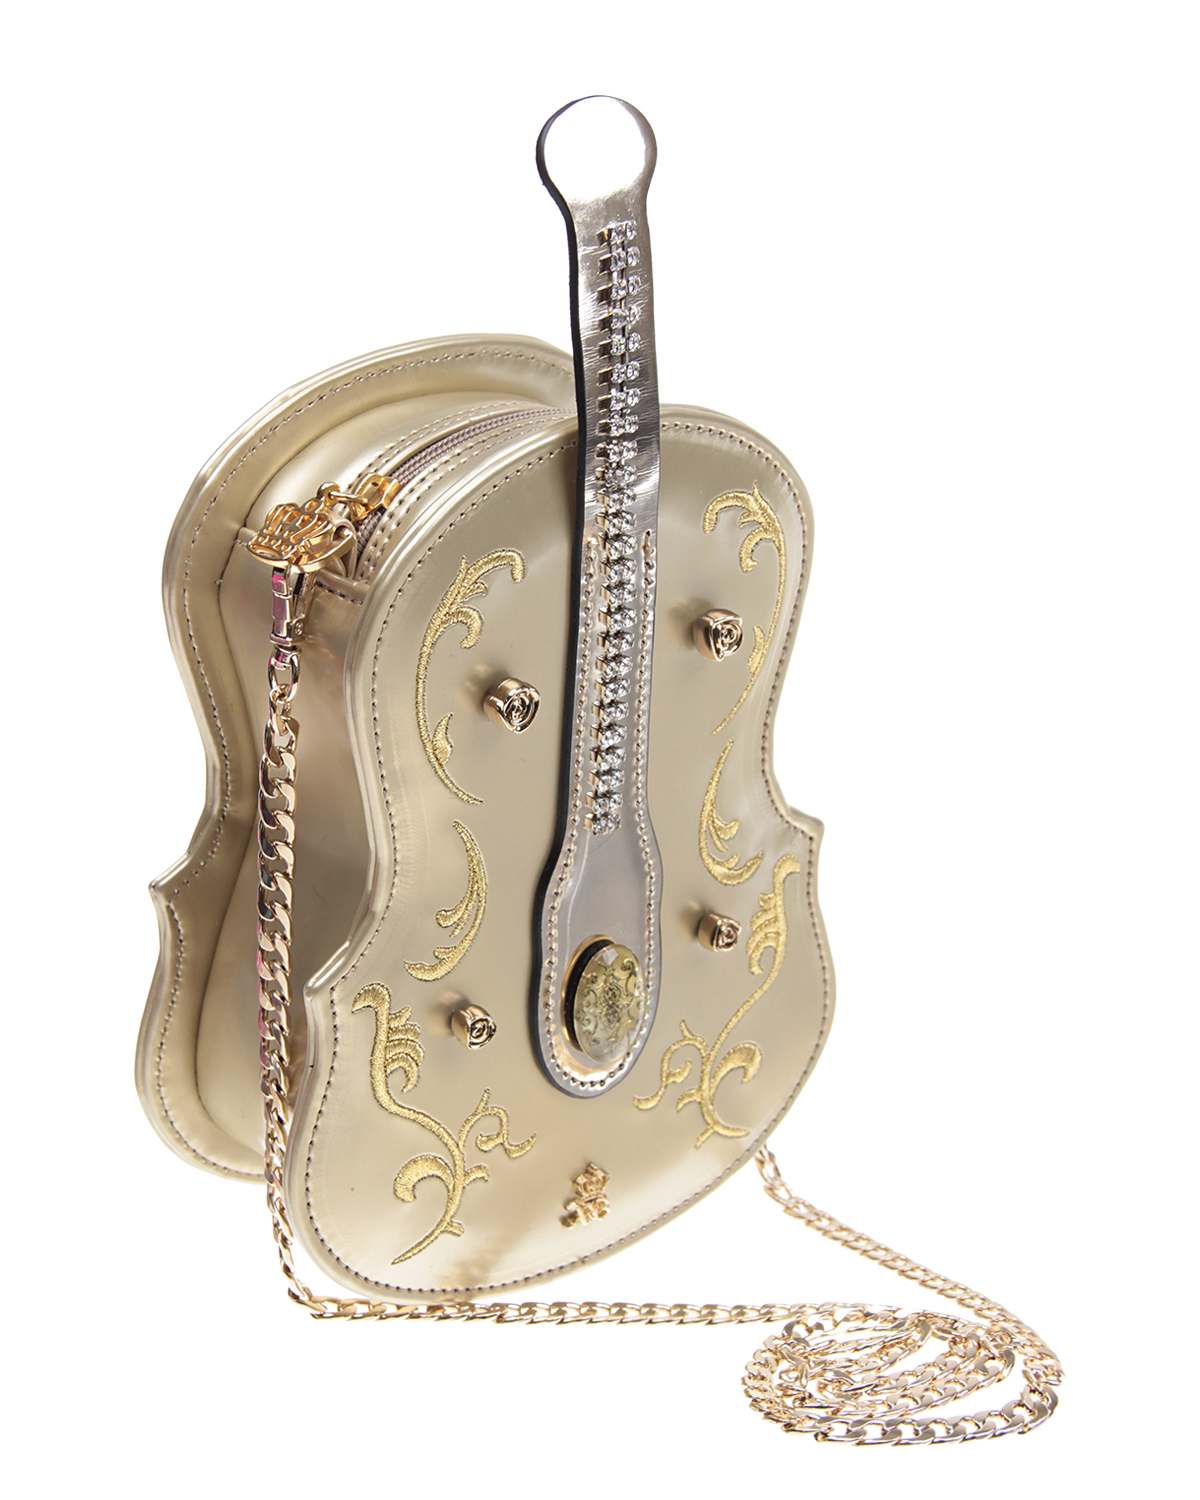 Сумка в форме скрипки с отделкой стразами Xavem Bags детская - фото 2